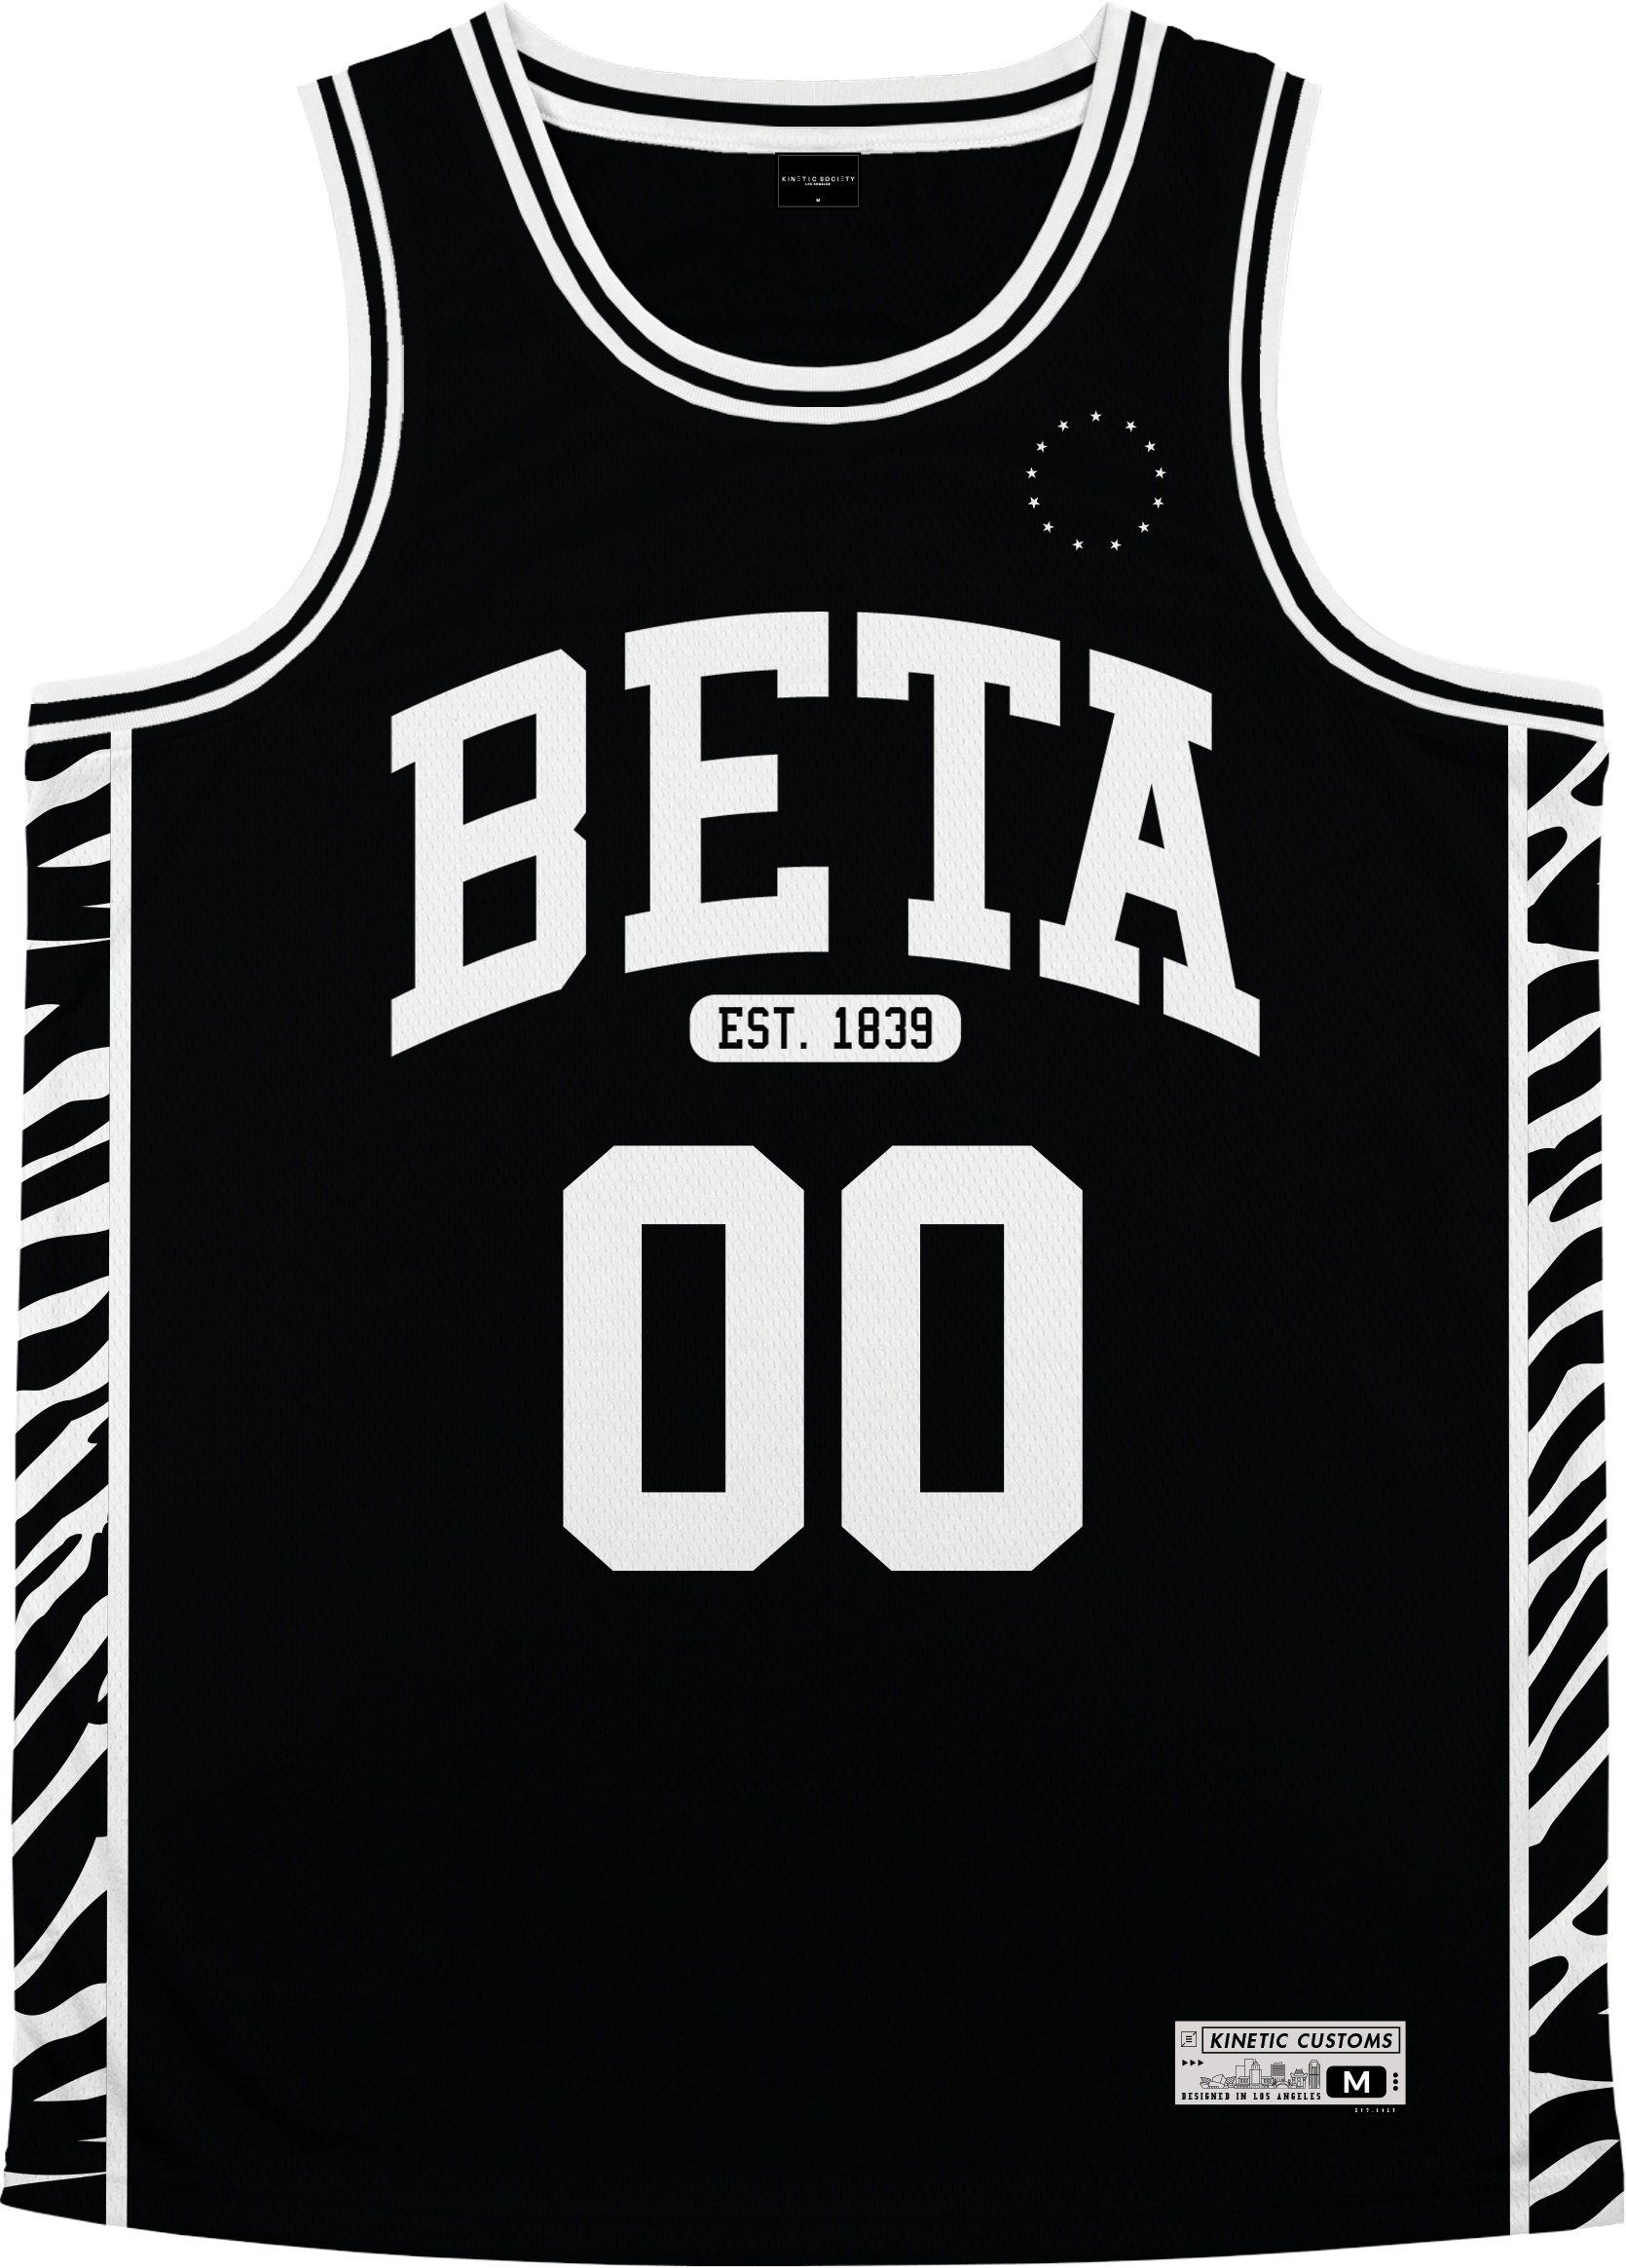 Beta Theta Pi - Zebra Flex Basketball Jersey - Kinetic Society